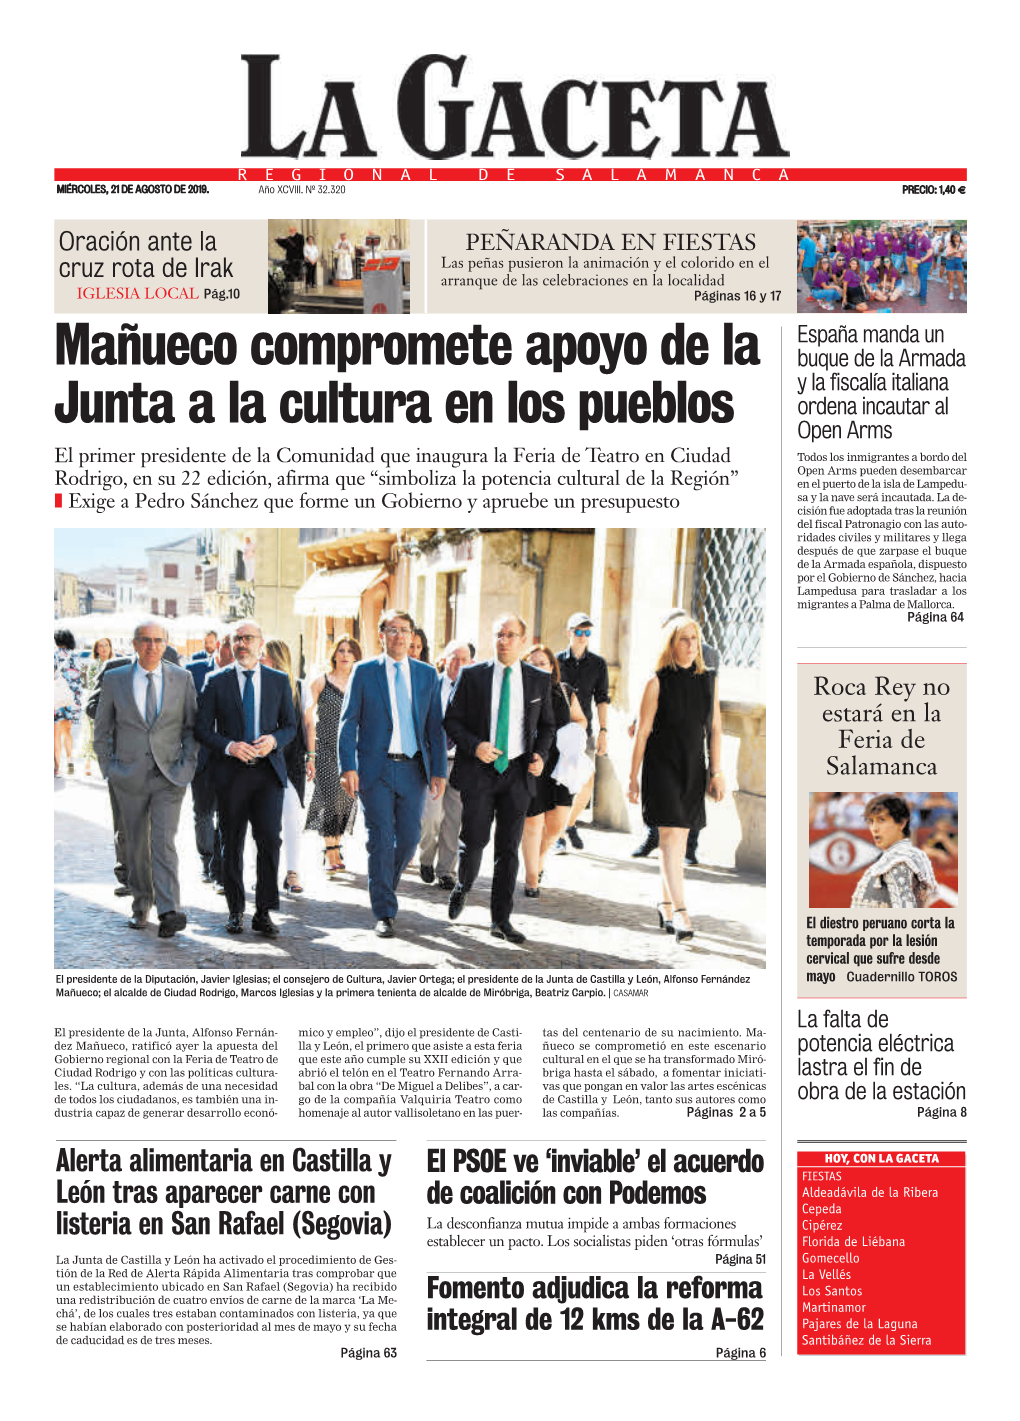 Mañueco Compromete Apoyo De La Junta a La Cultura En Los Pueblos